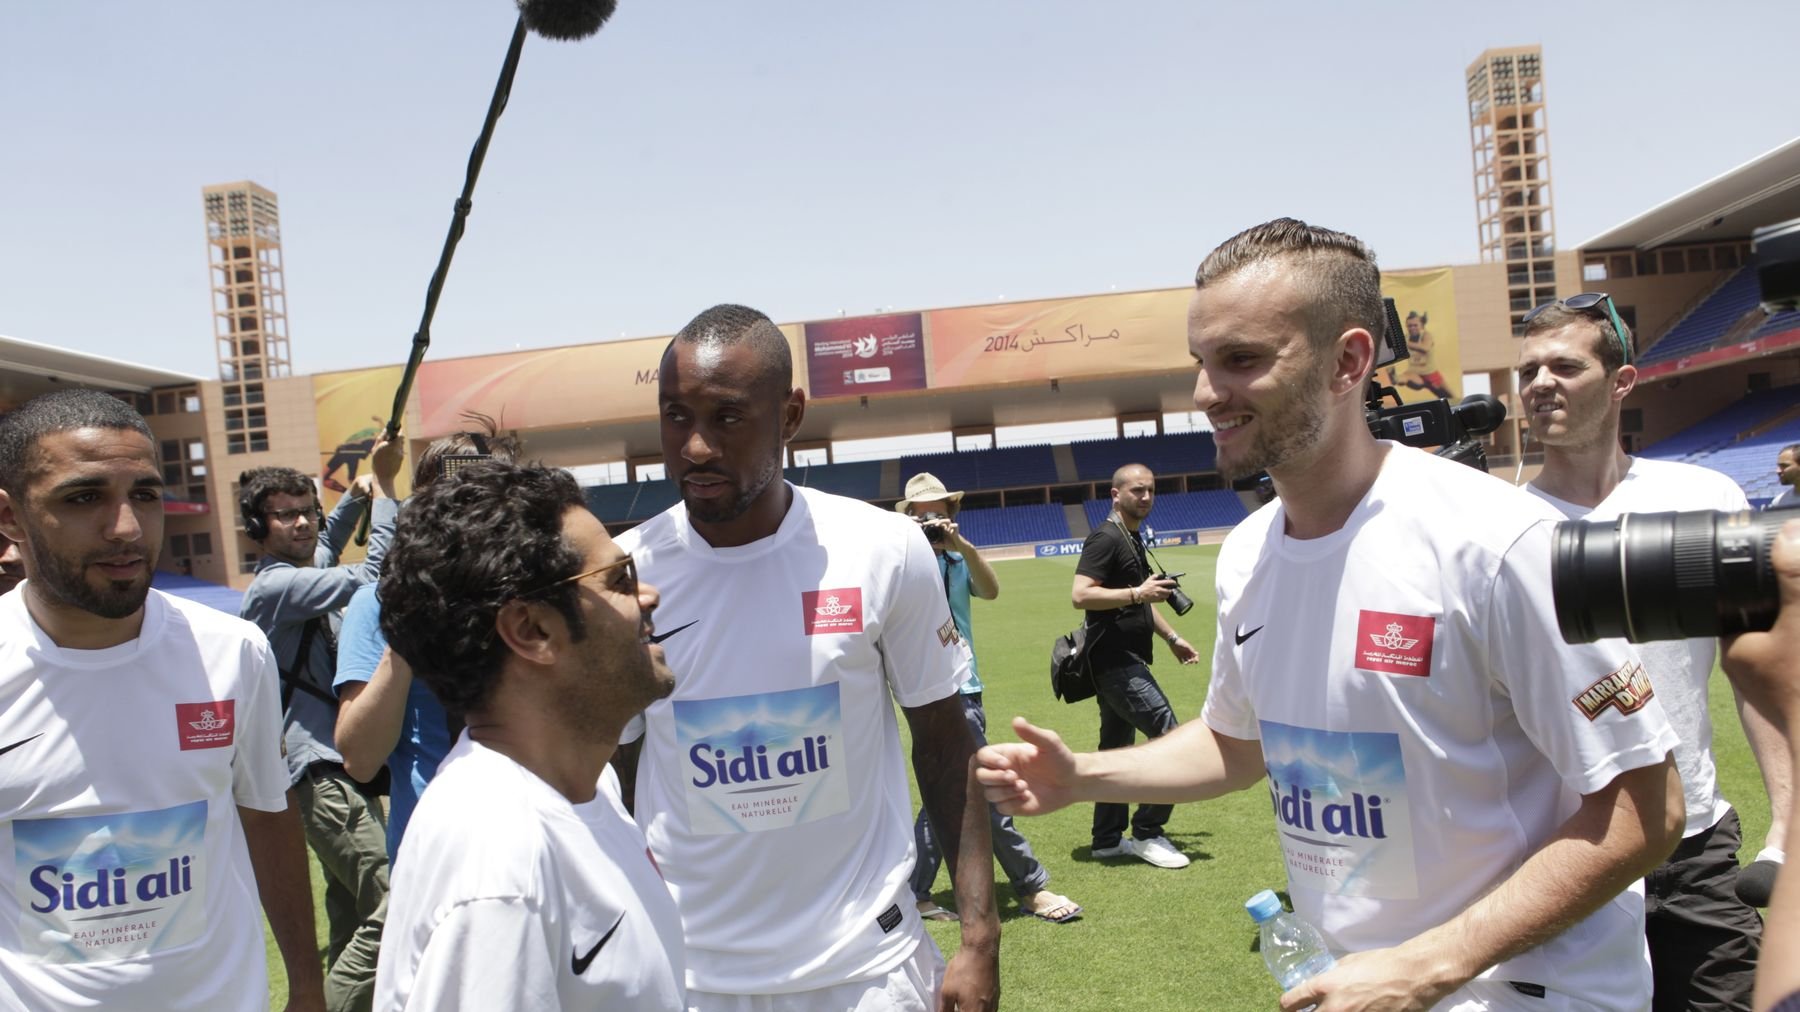 Sous un soleil de plomb, les humoristes qui ont fait le show au Marrakech du rire s'apprêtent à affronter, sur la pelouse, des stars du football. 
